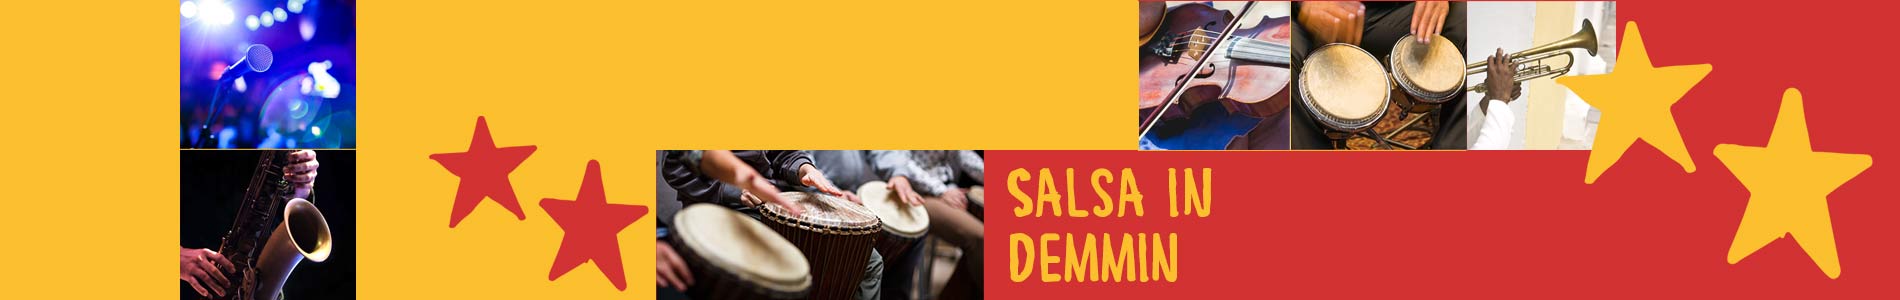 Salsa in Demmin – Salsa lernen und tanzen, Tanzkurse, Partys, Veranstaltungen